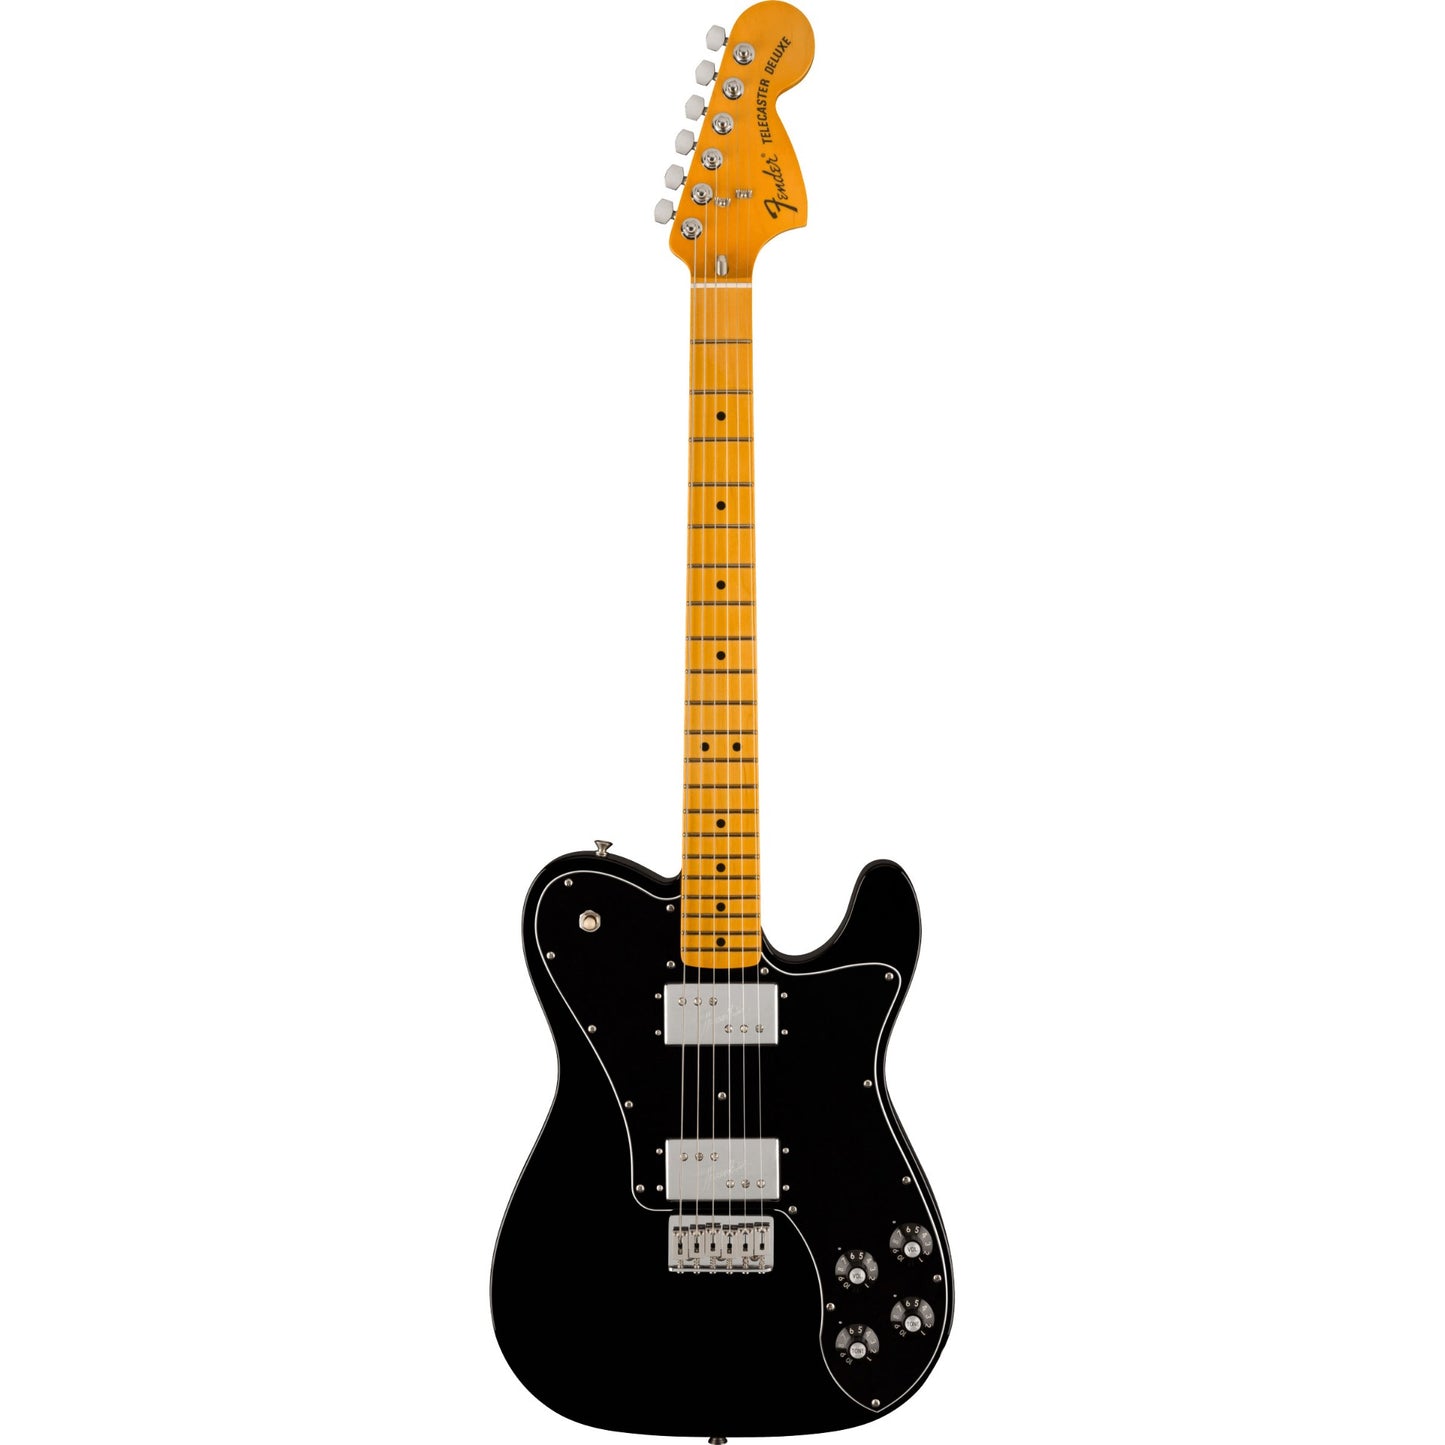 Fender American Vintage II 1975 Telecaster Deluxe in Black